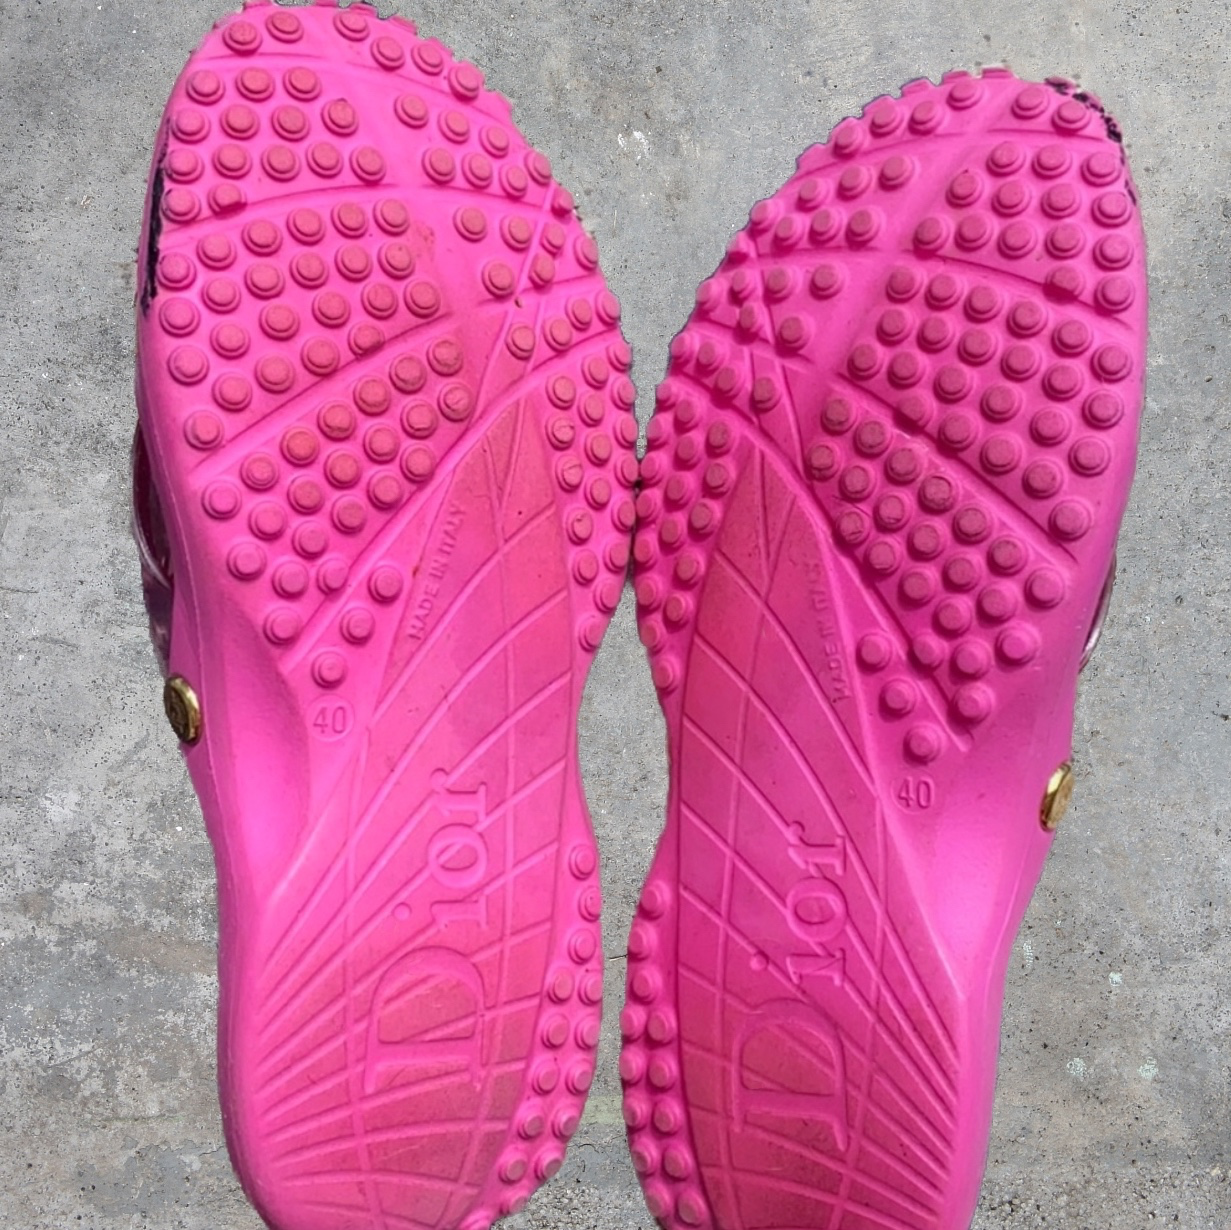 Dior Pink Trotter Pool Slides